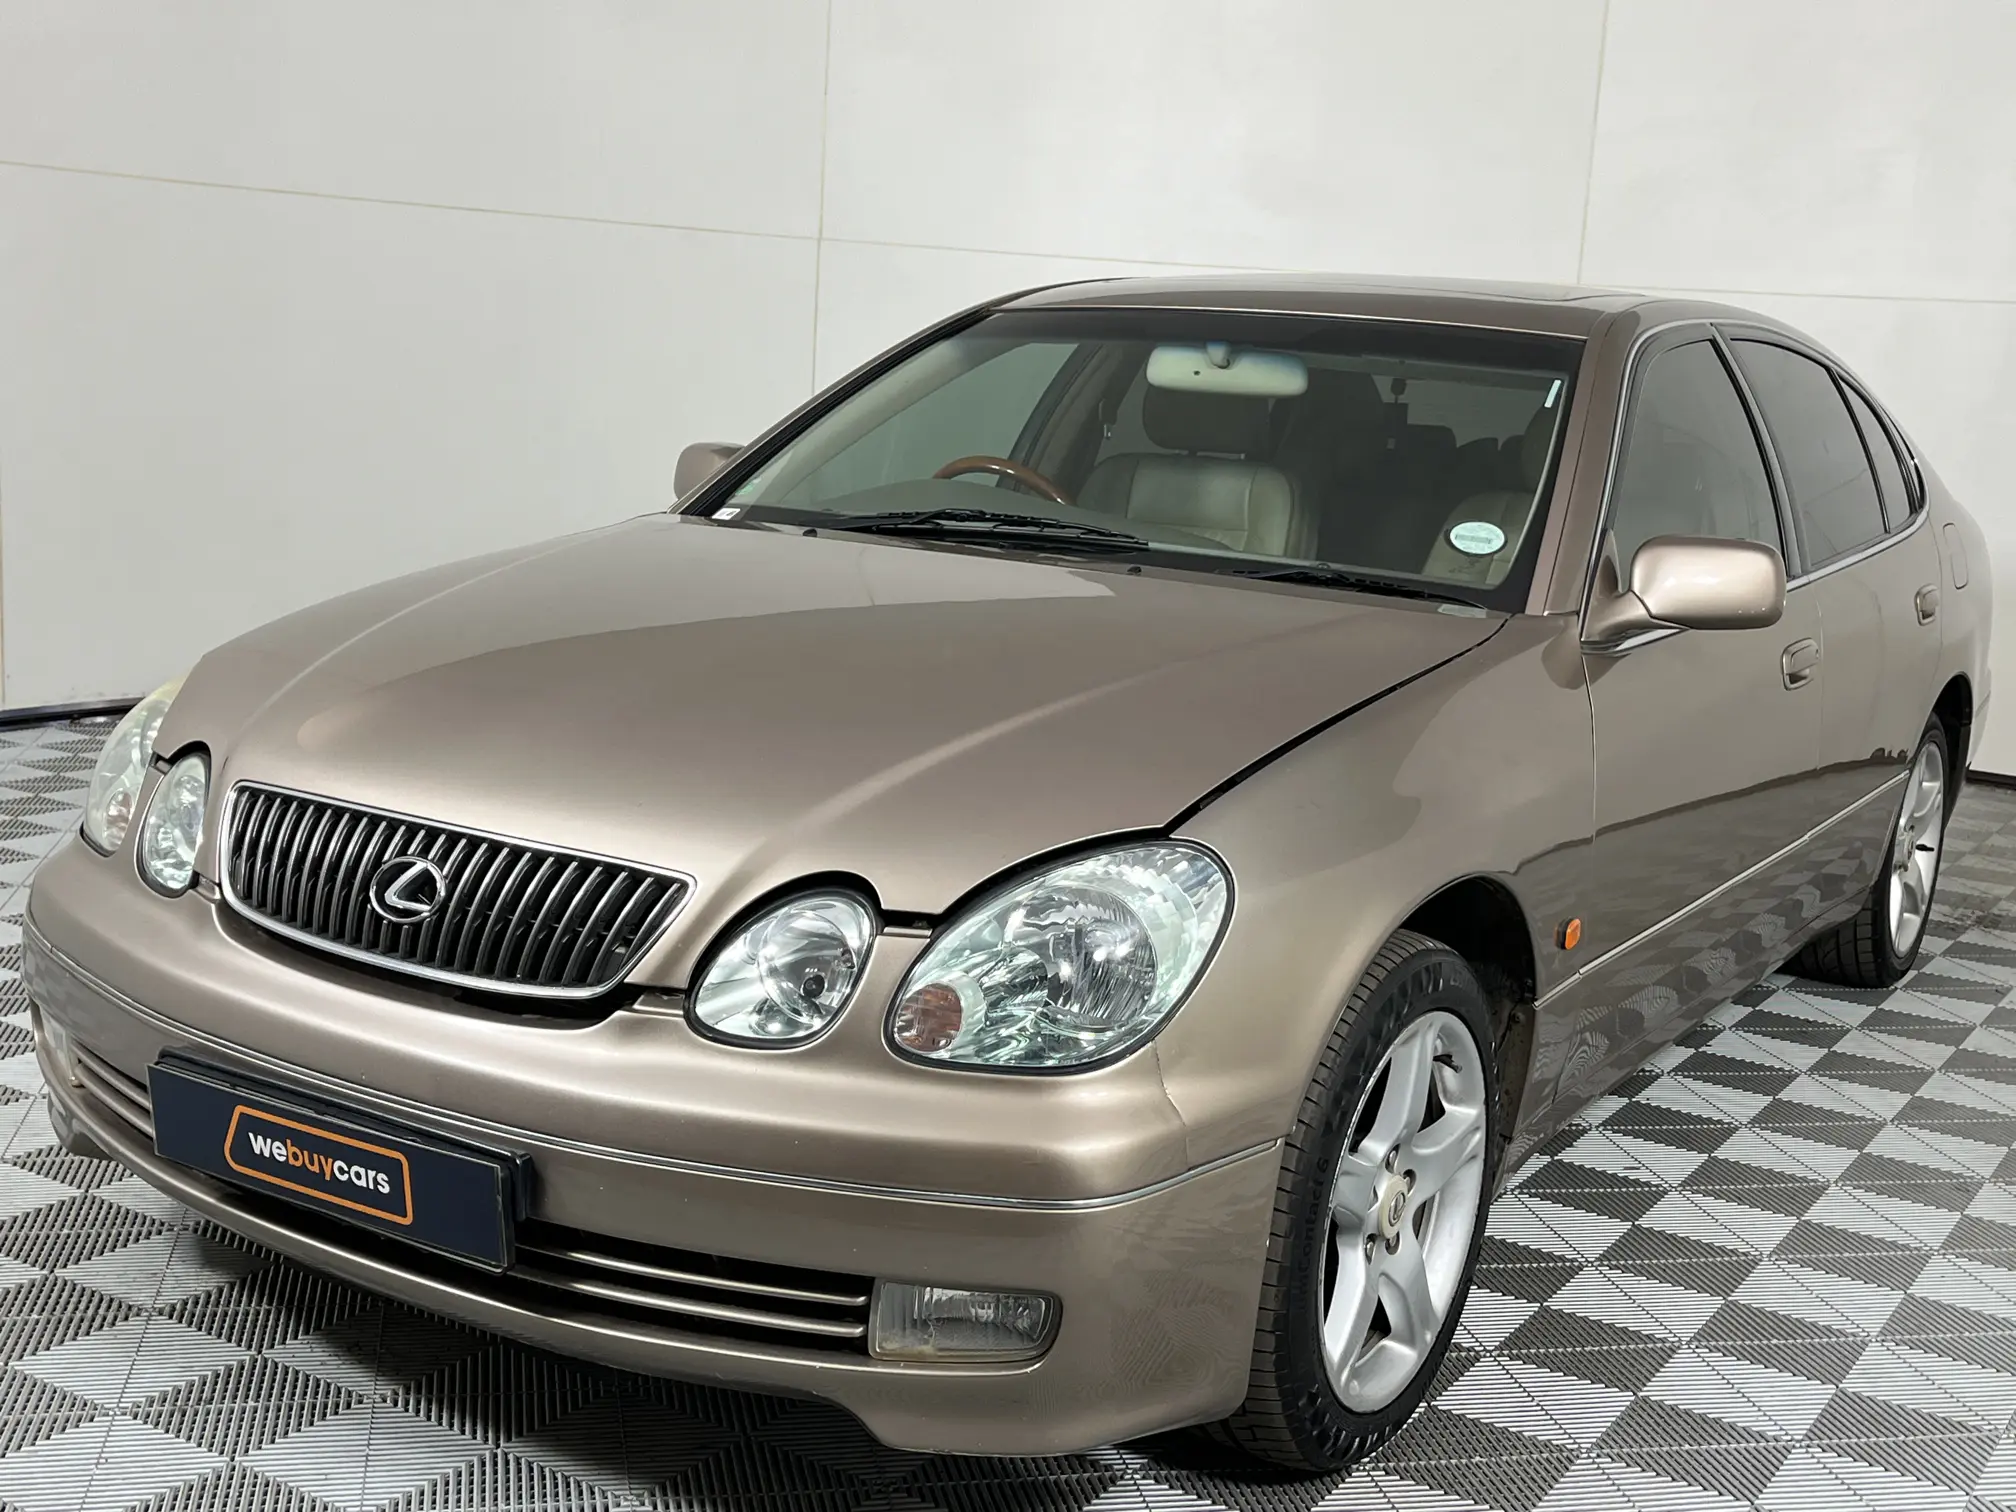 2003 Lexus GS 300